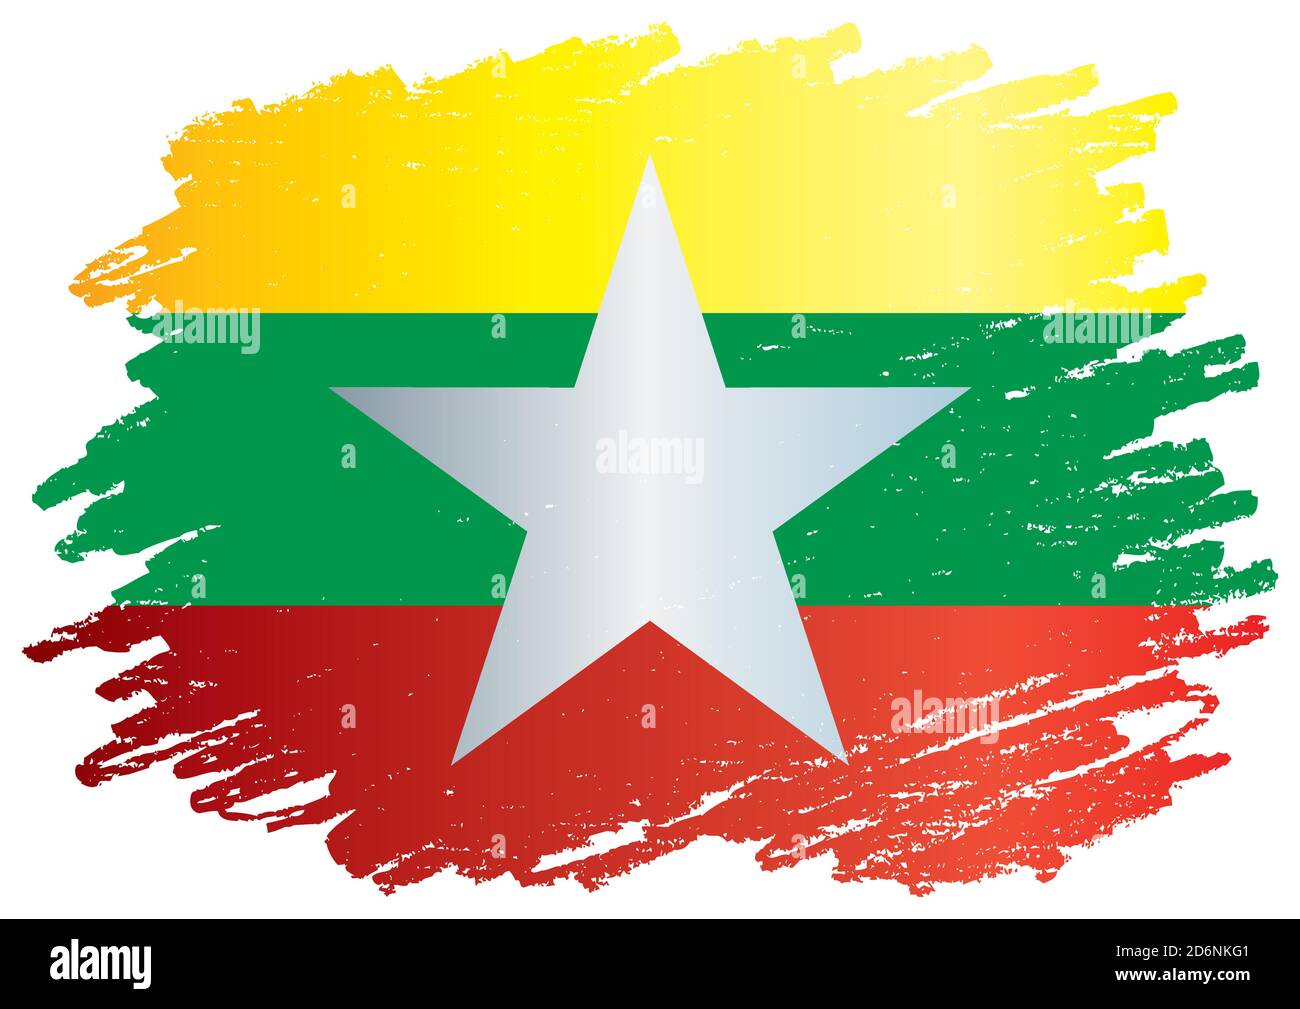 Drapeau du Myanmar, République de l'Union du Myanmar. Illustration vectorielle colorée et lumineuse Illustration de Vecteur